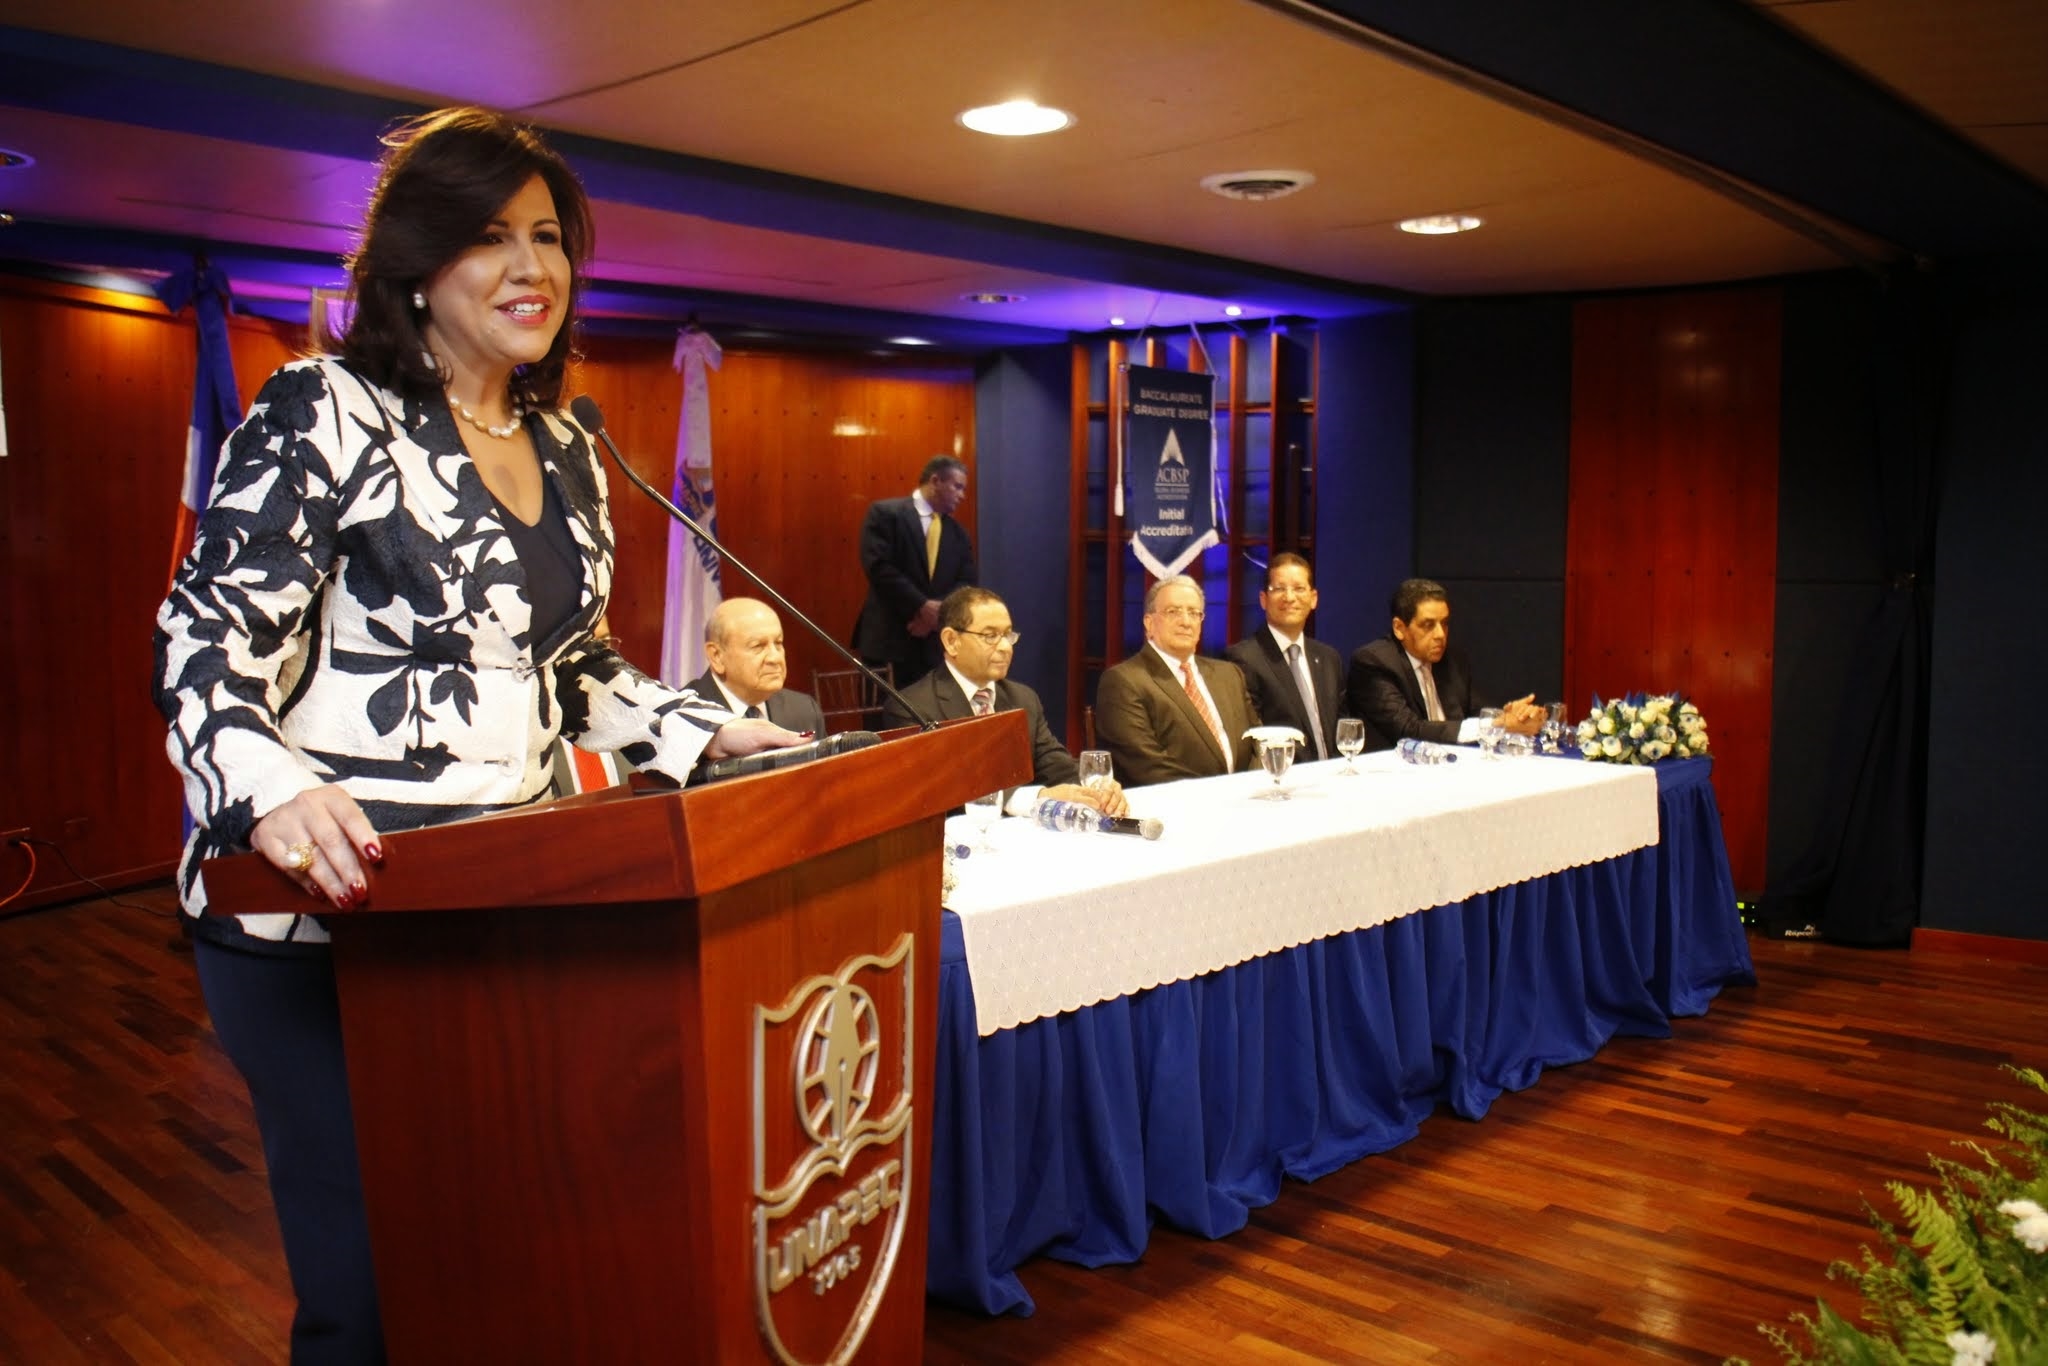 Margarita Cedeño de Fernández, Vicepresidenta de R.D. desarrollando el tema "La familia como figura jurídica".